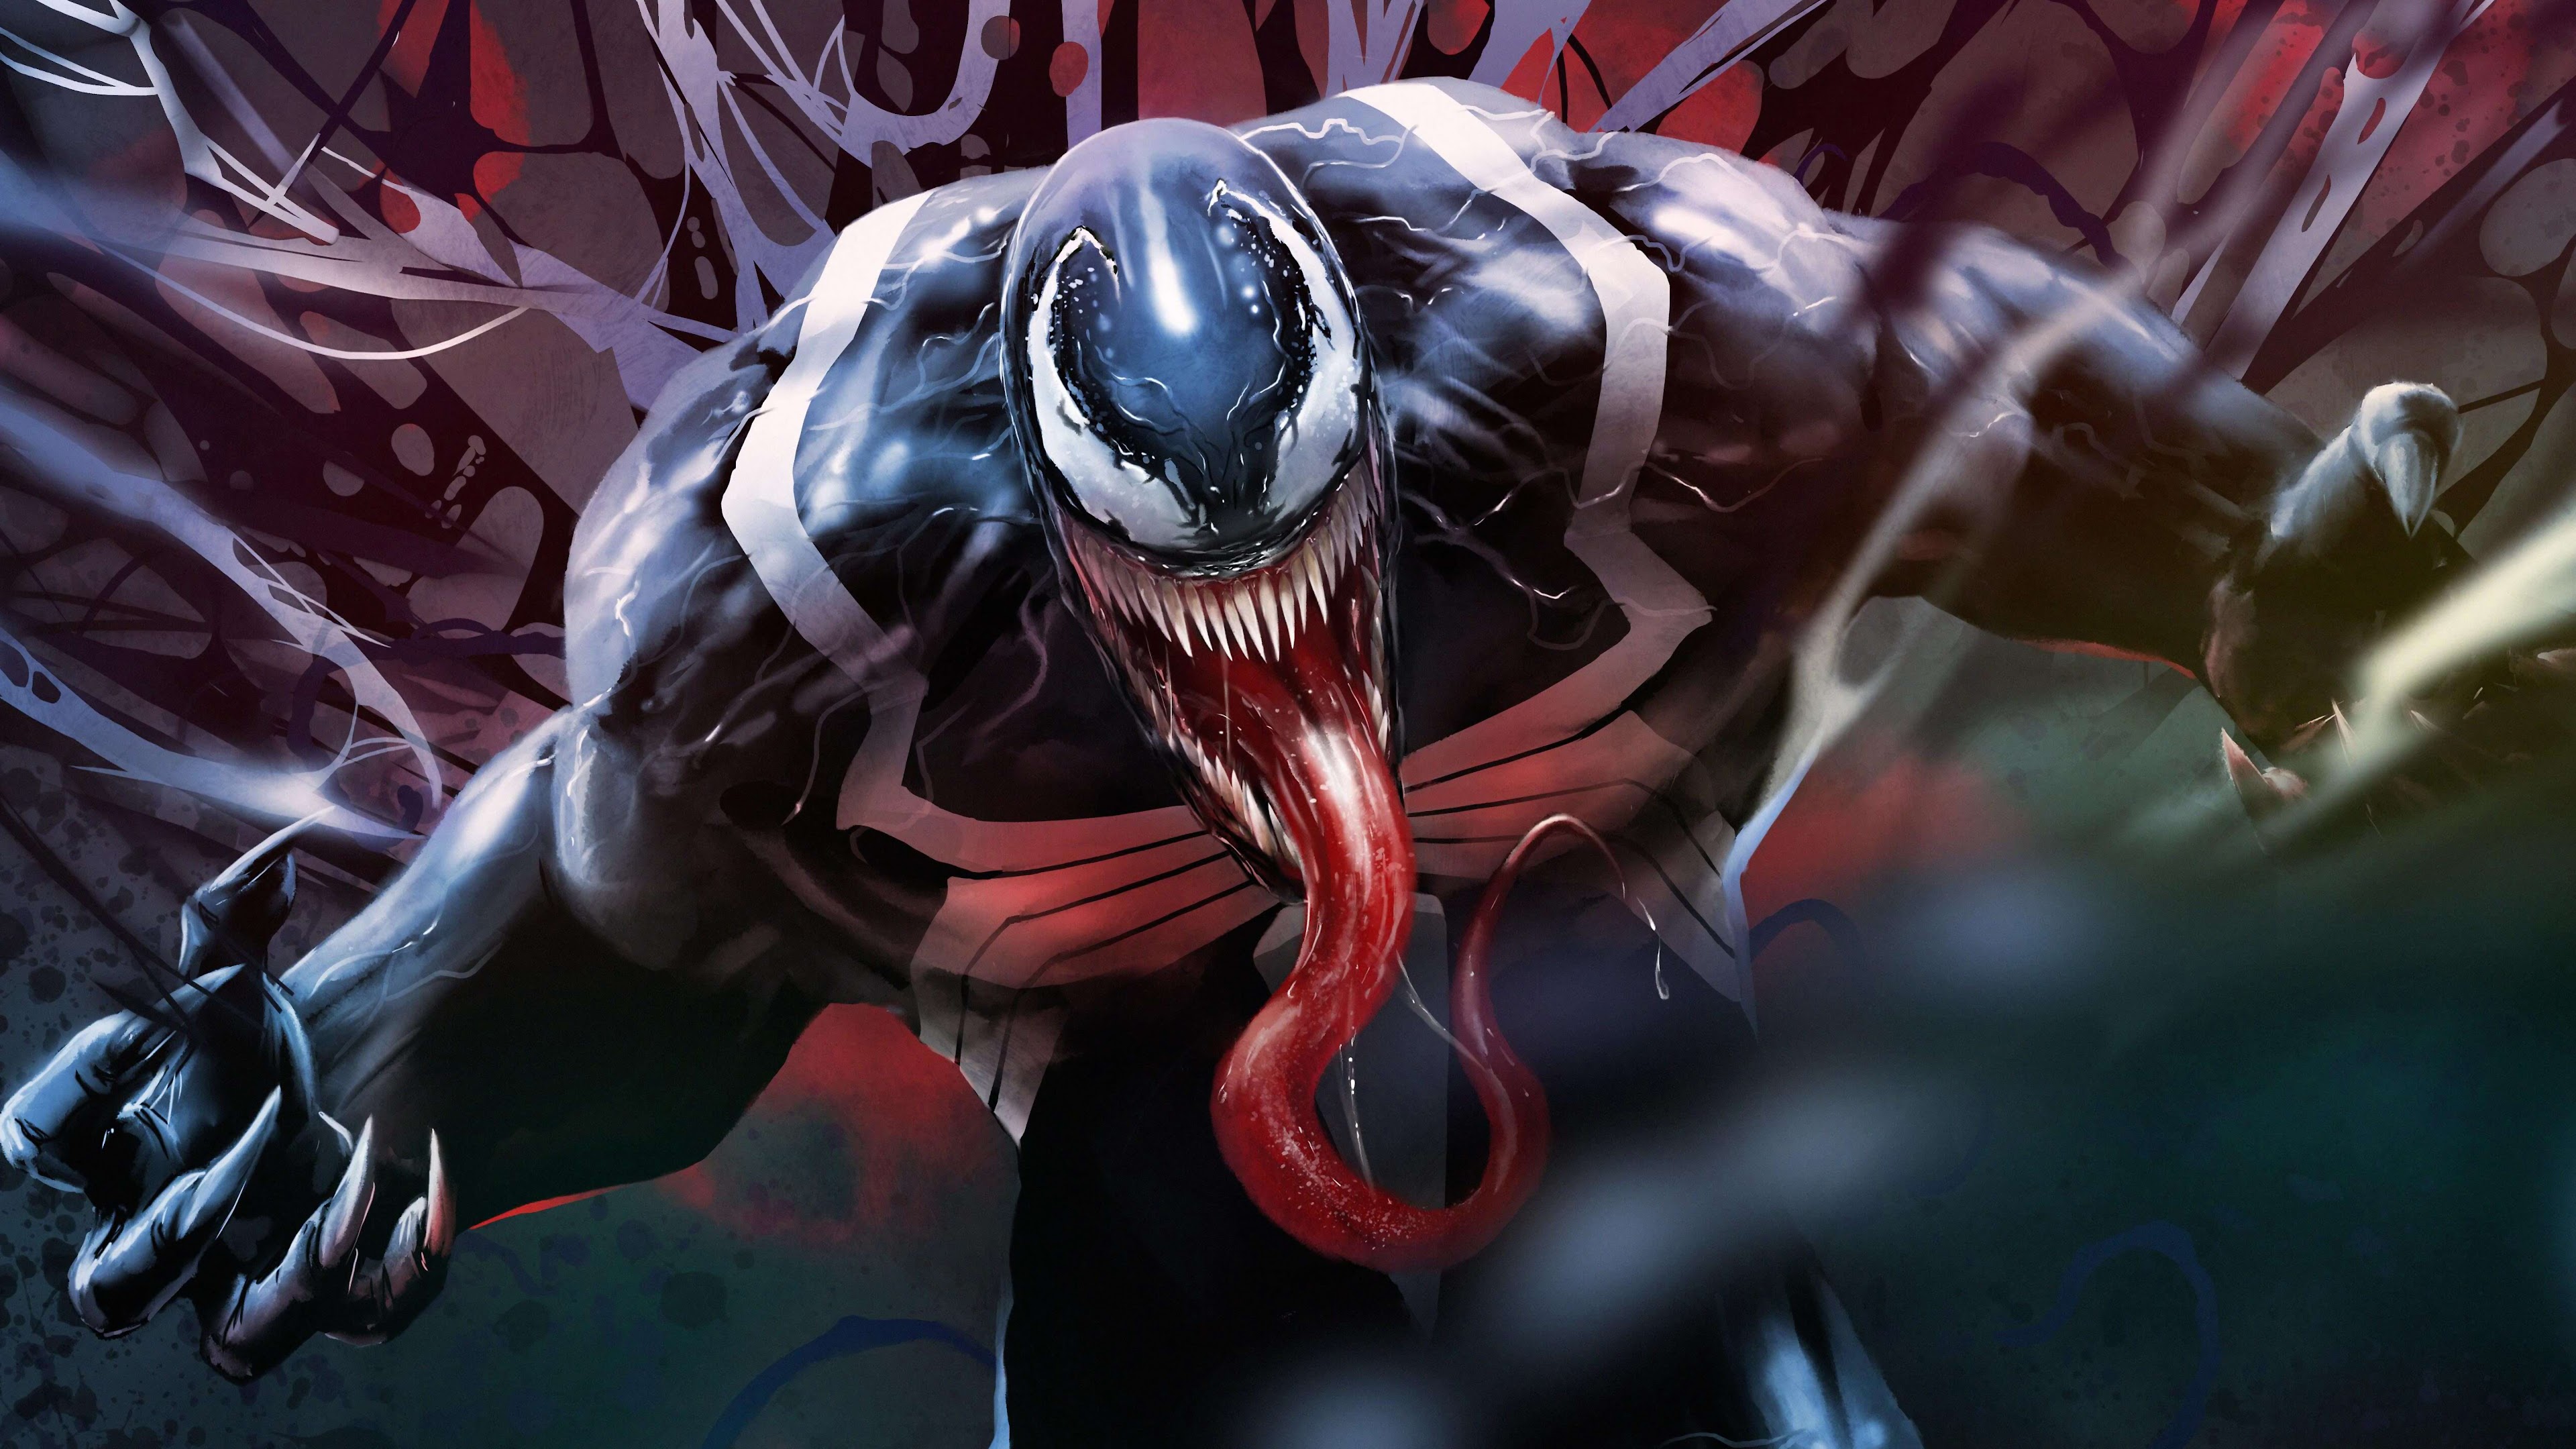 Download venom wallpaper hd for desktop or mobile device. 